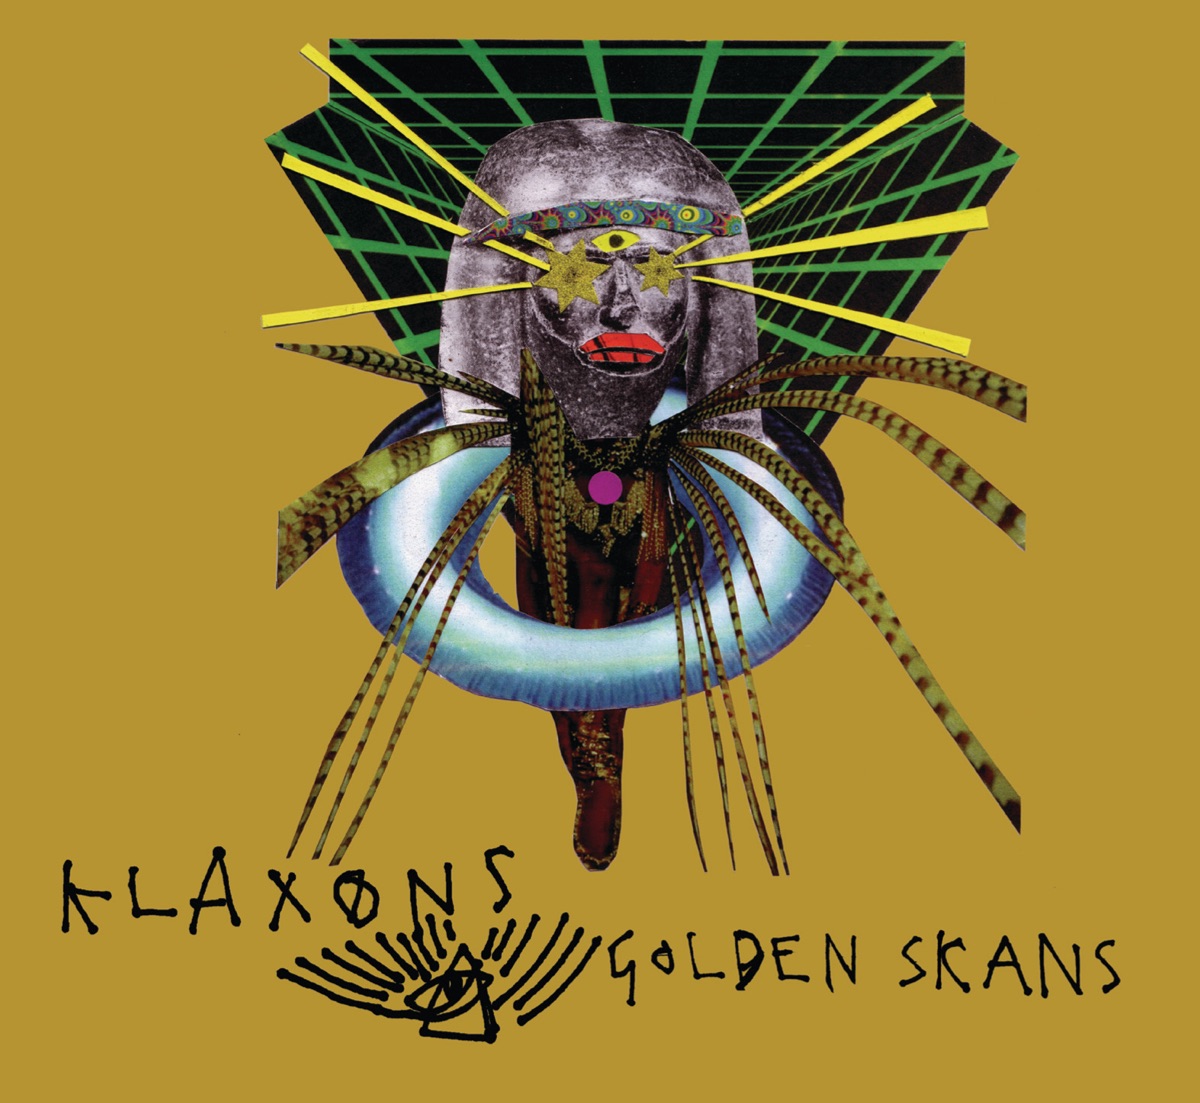 Klaxons — Golden Skans cover artwork